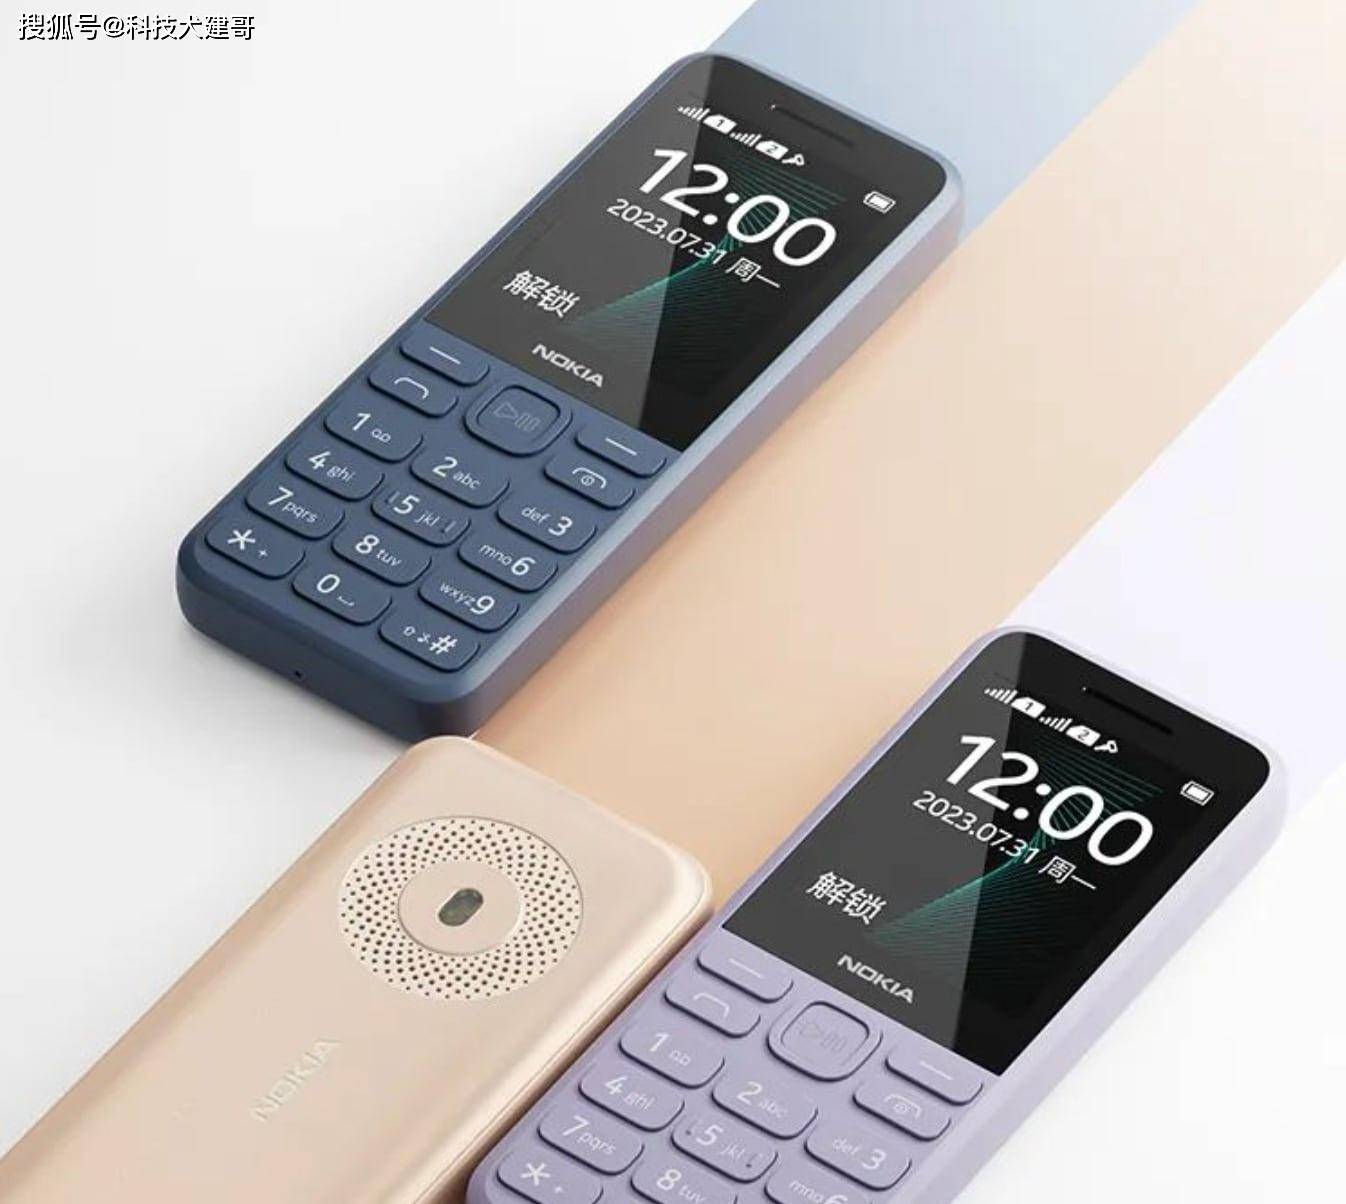 华为手机 nfc功能:诺基亚推出新款125功能机；极星品牌将推高端手机对标华为保时捷